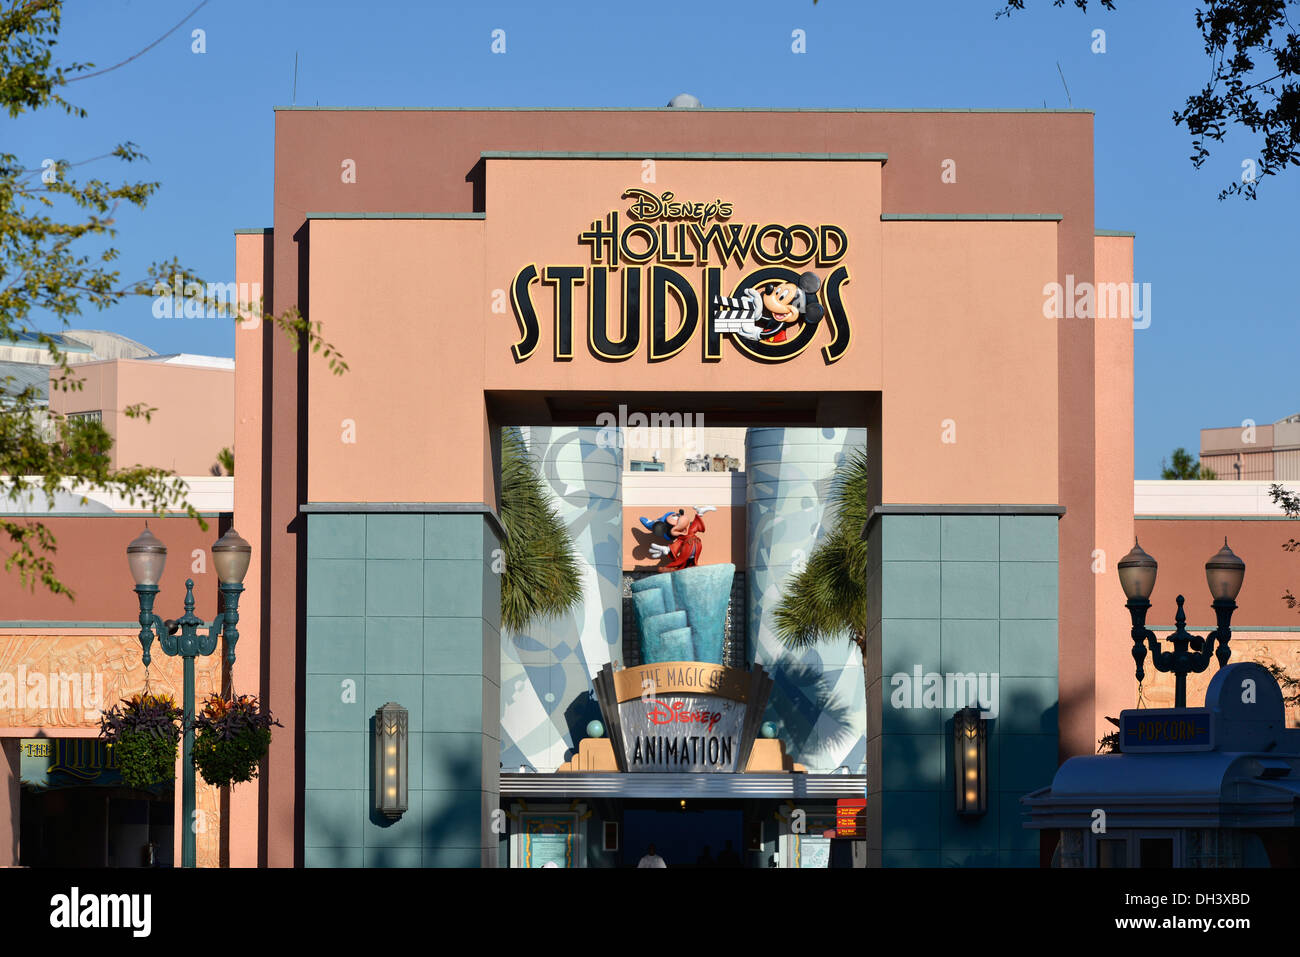 Les studios hollywoodiens, entrée à la magie de Disney Animation, Disney World, Orlando, Floride Banque D'Images